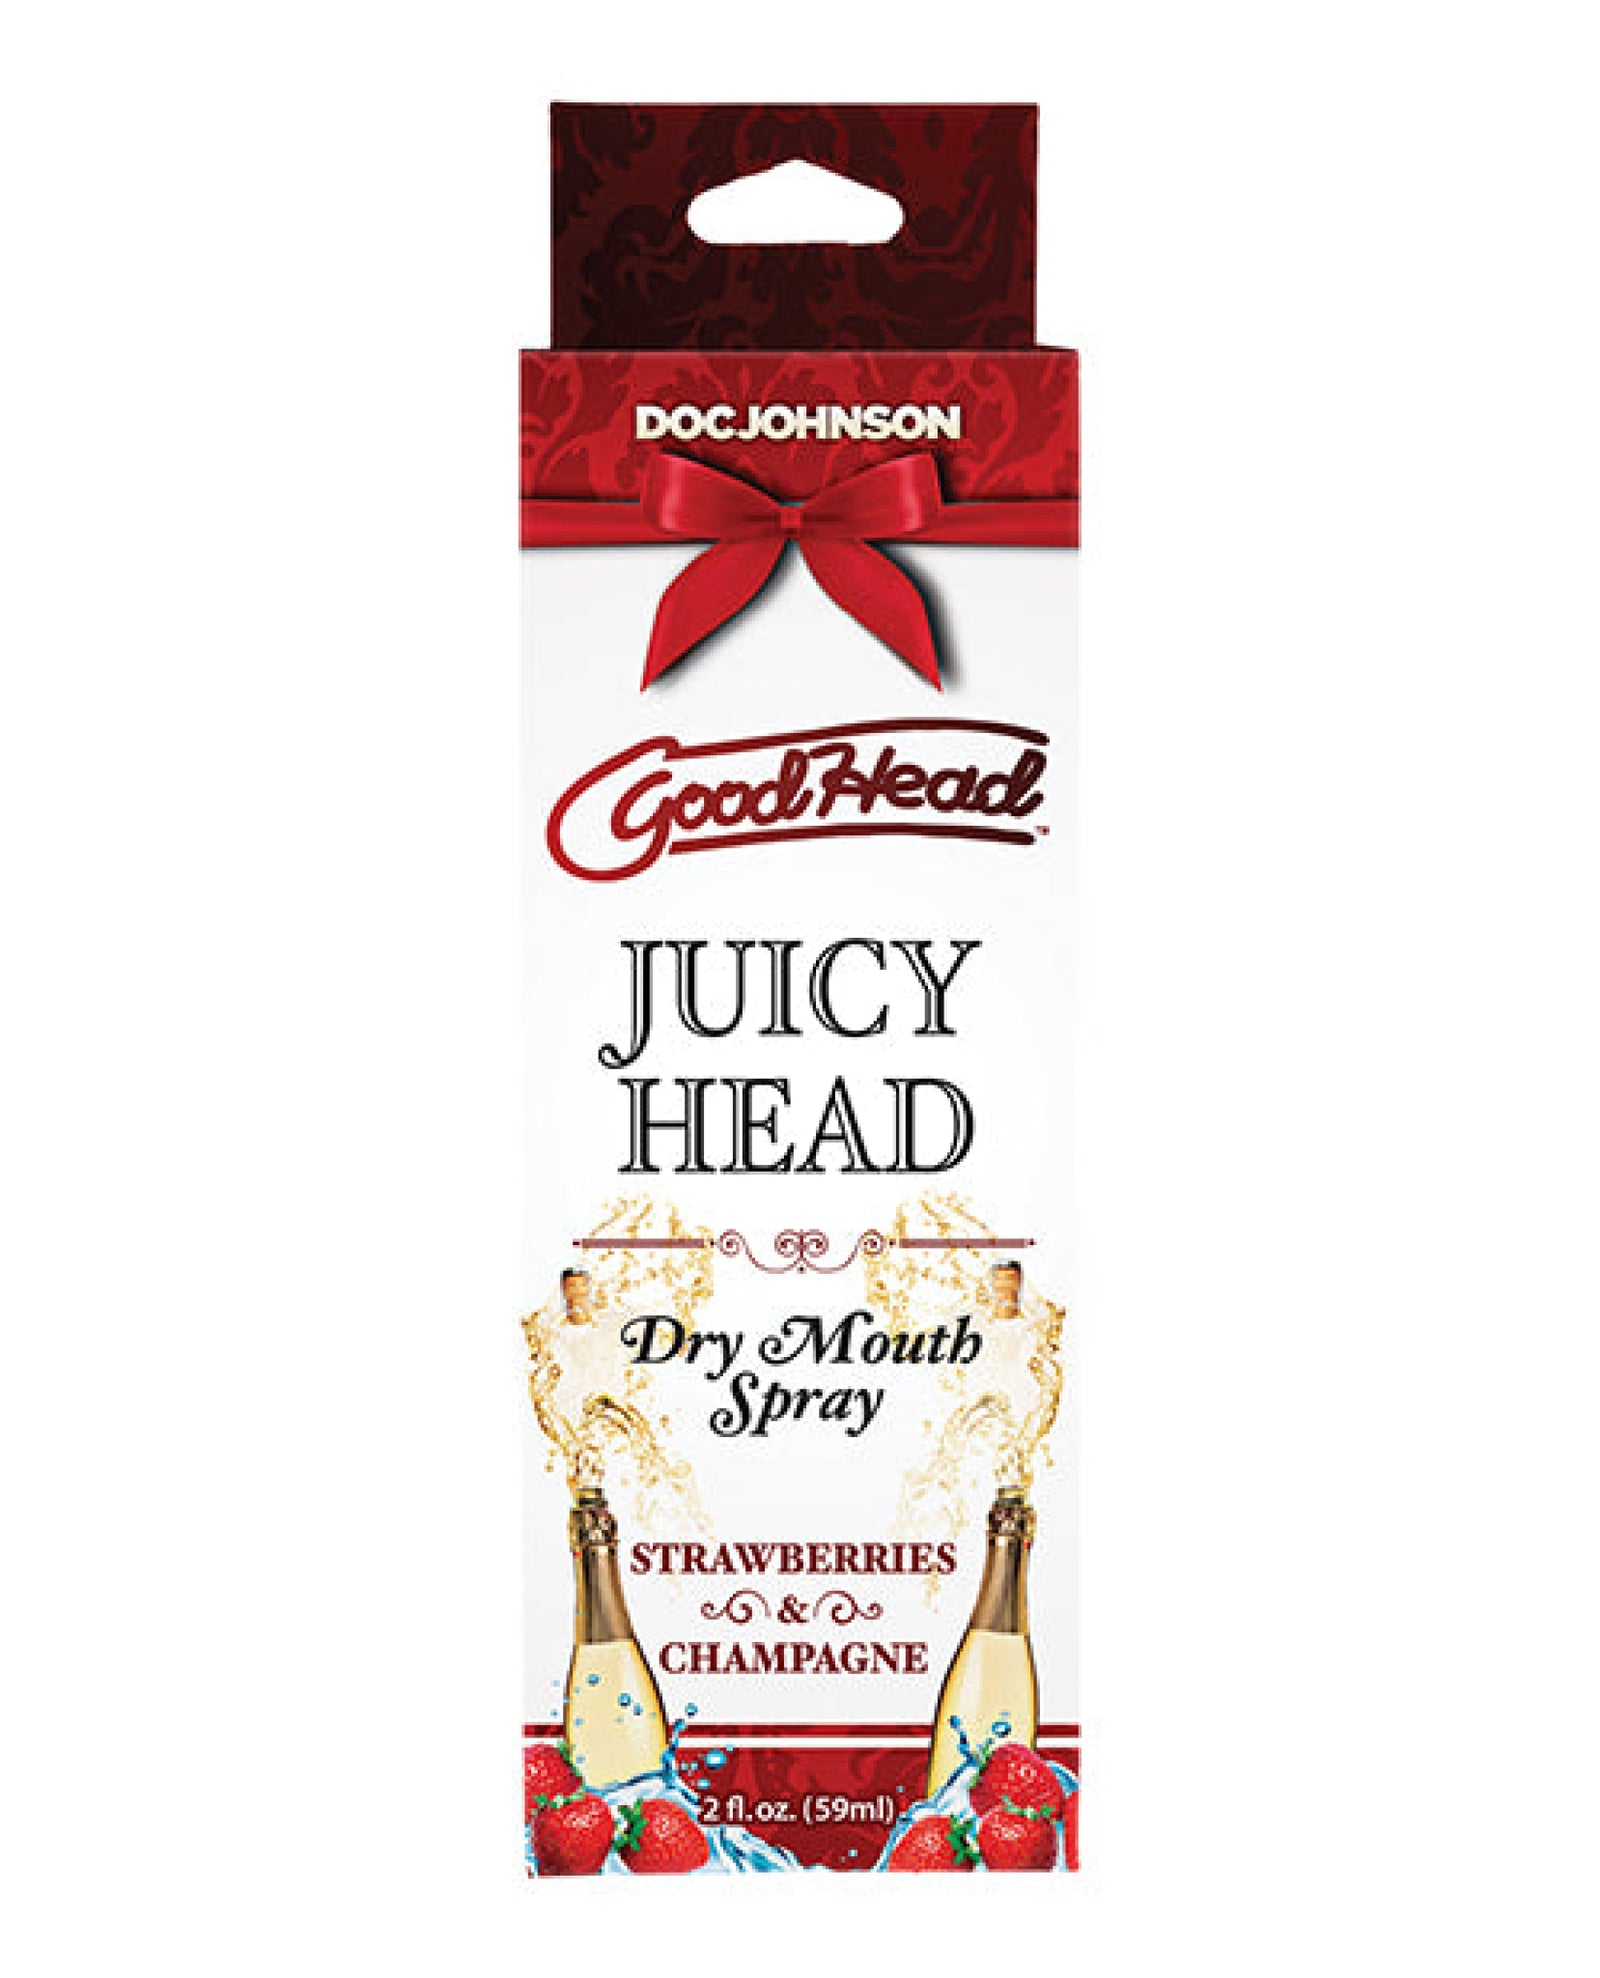 Goodhead Juicy Head Dry Mouth Spray Doc Johnson